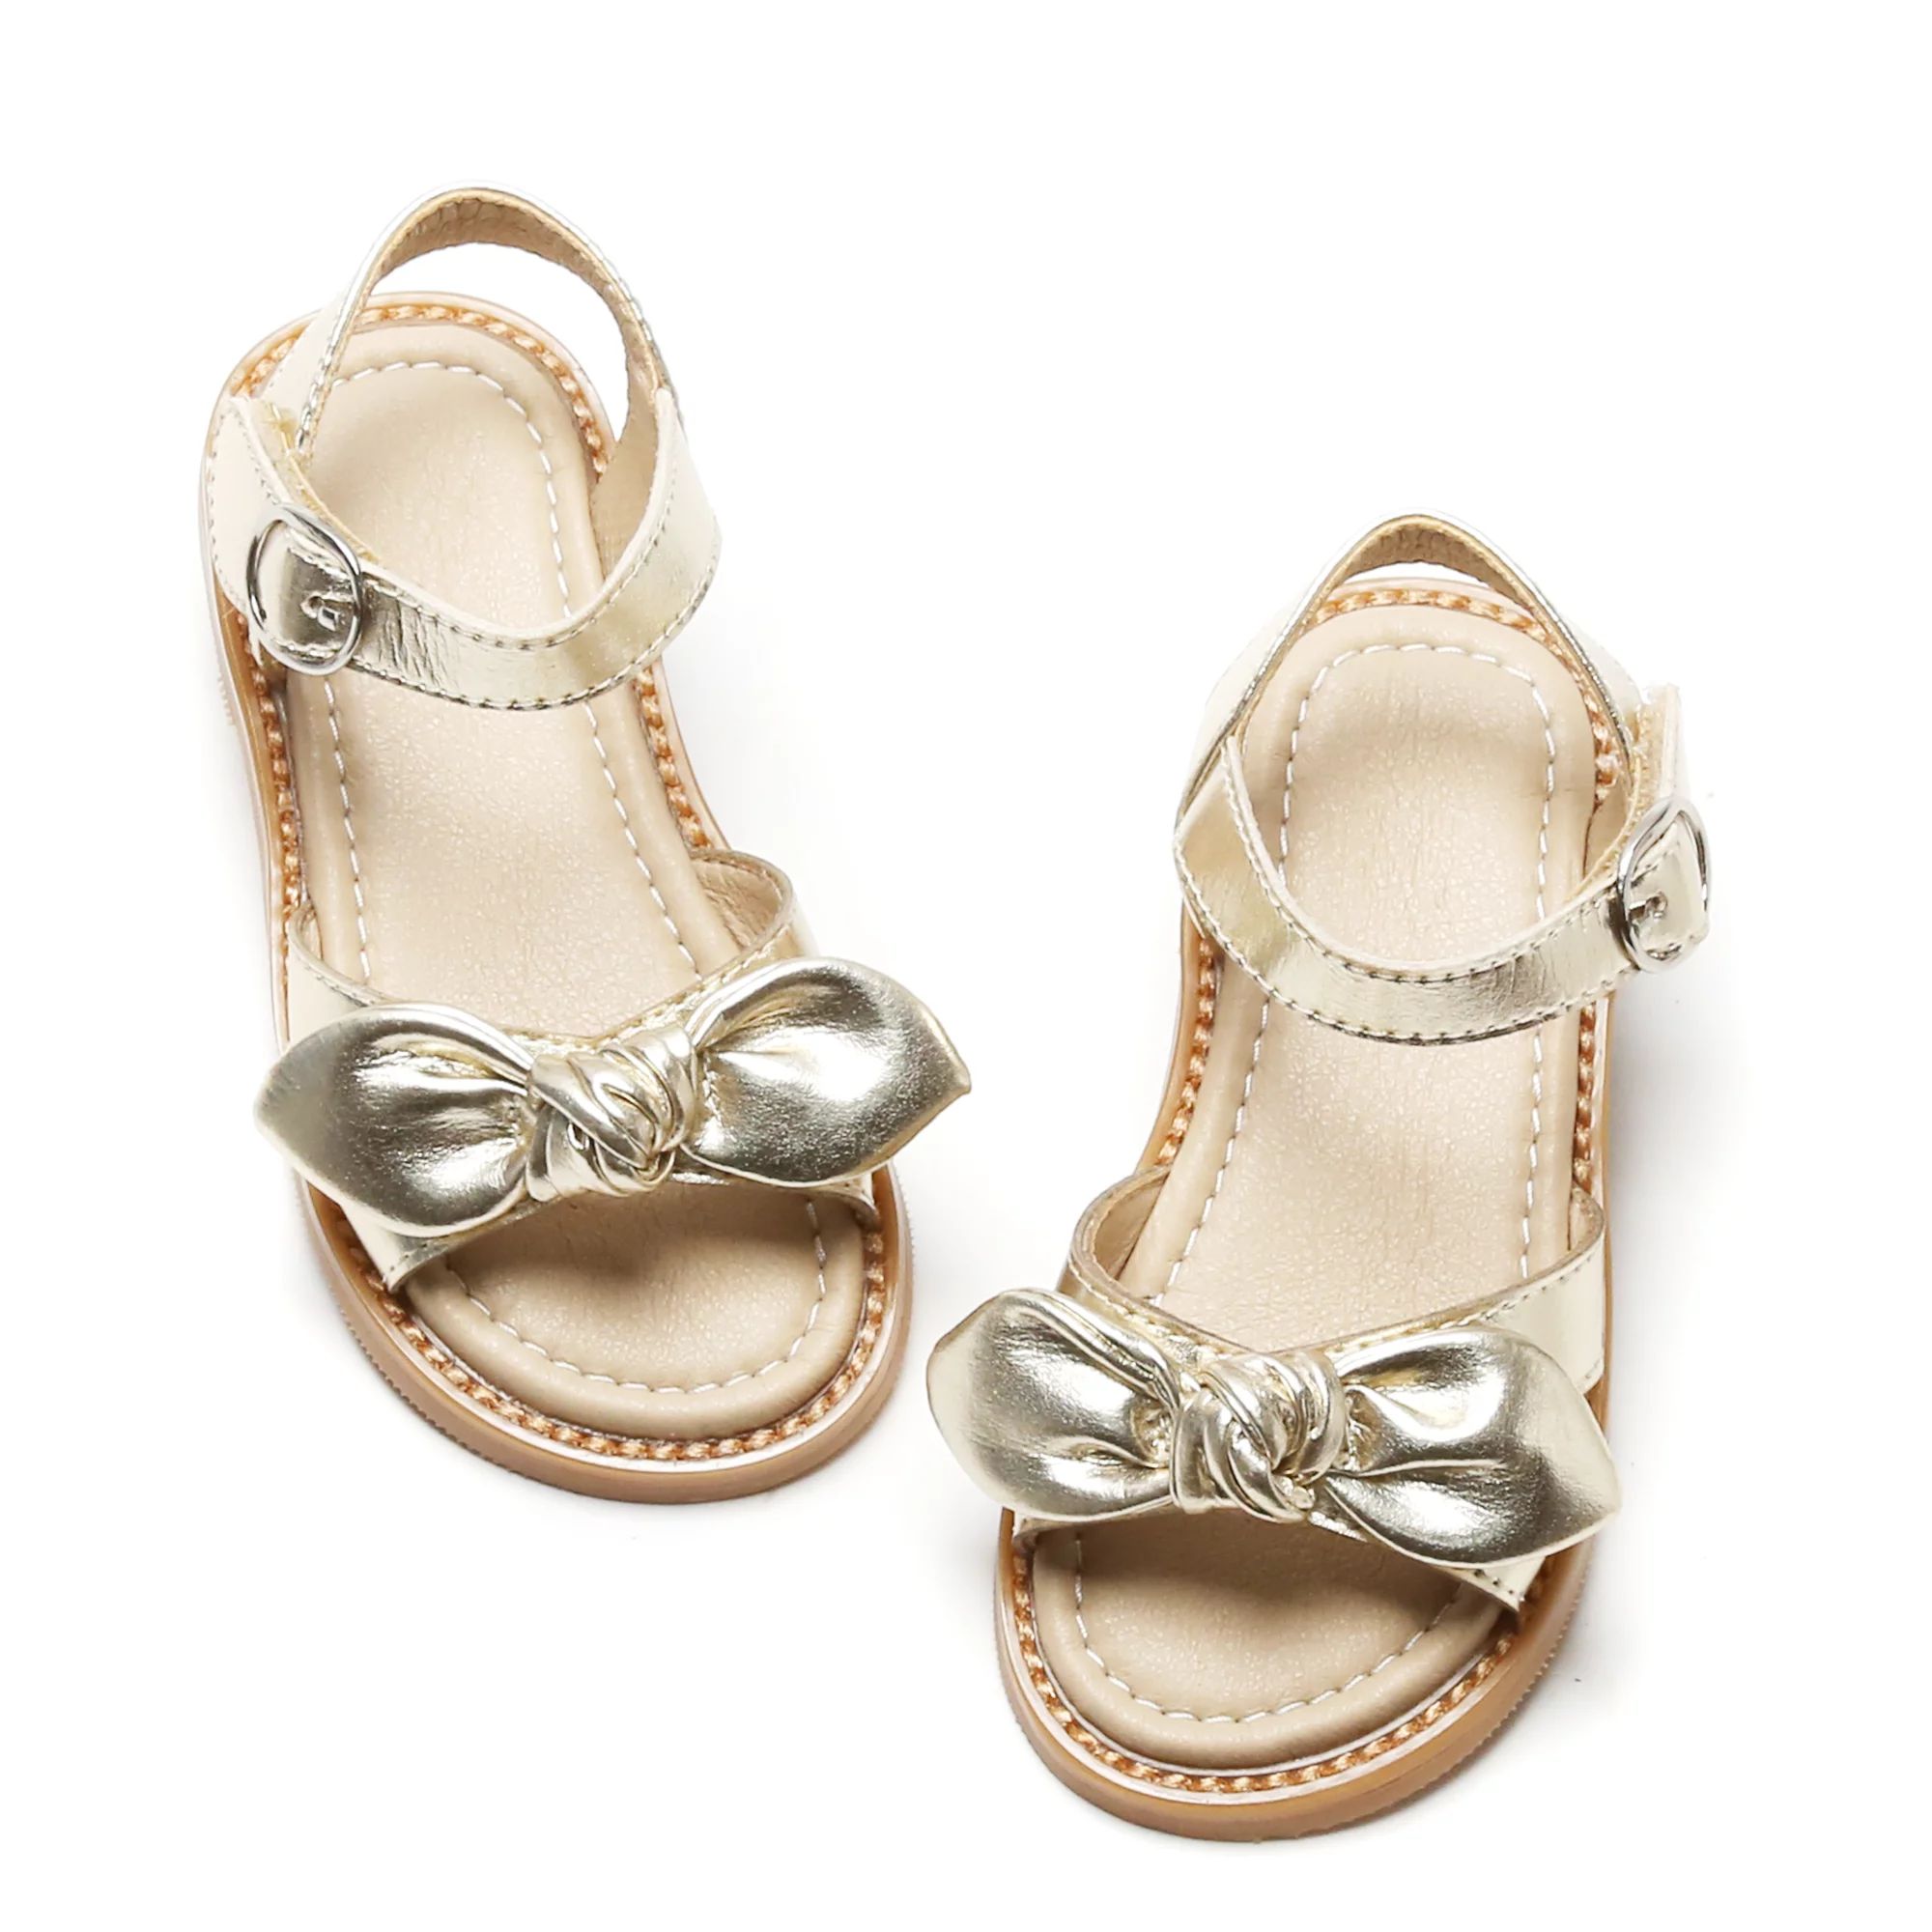 Kiderence Toddler Girls Slides Sandals Kids Sandals Little Girls Shoes Toddler （CK696-Gold-12M... | Walmart (US)